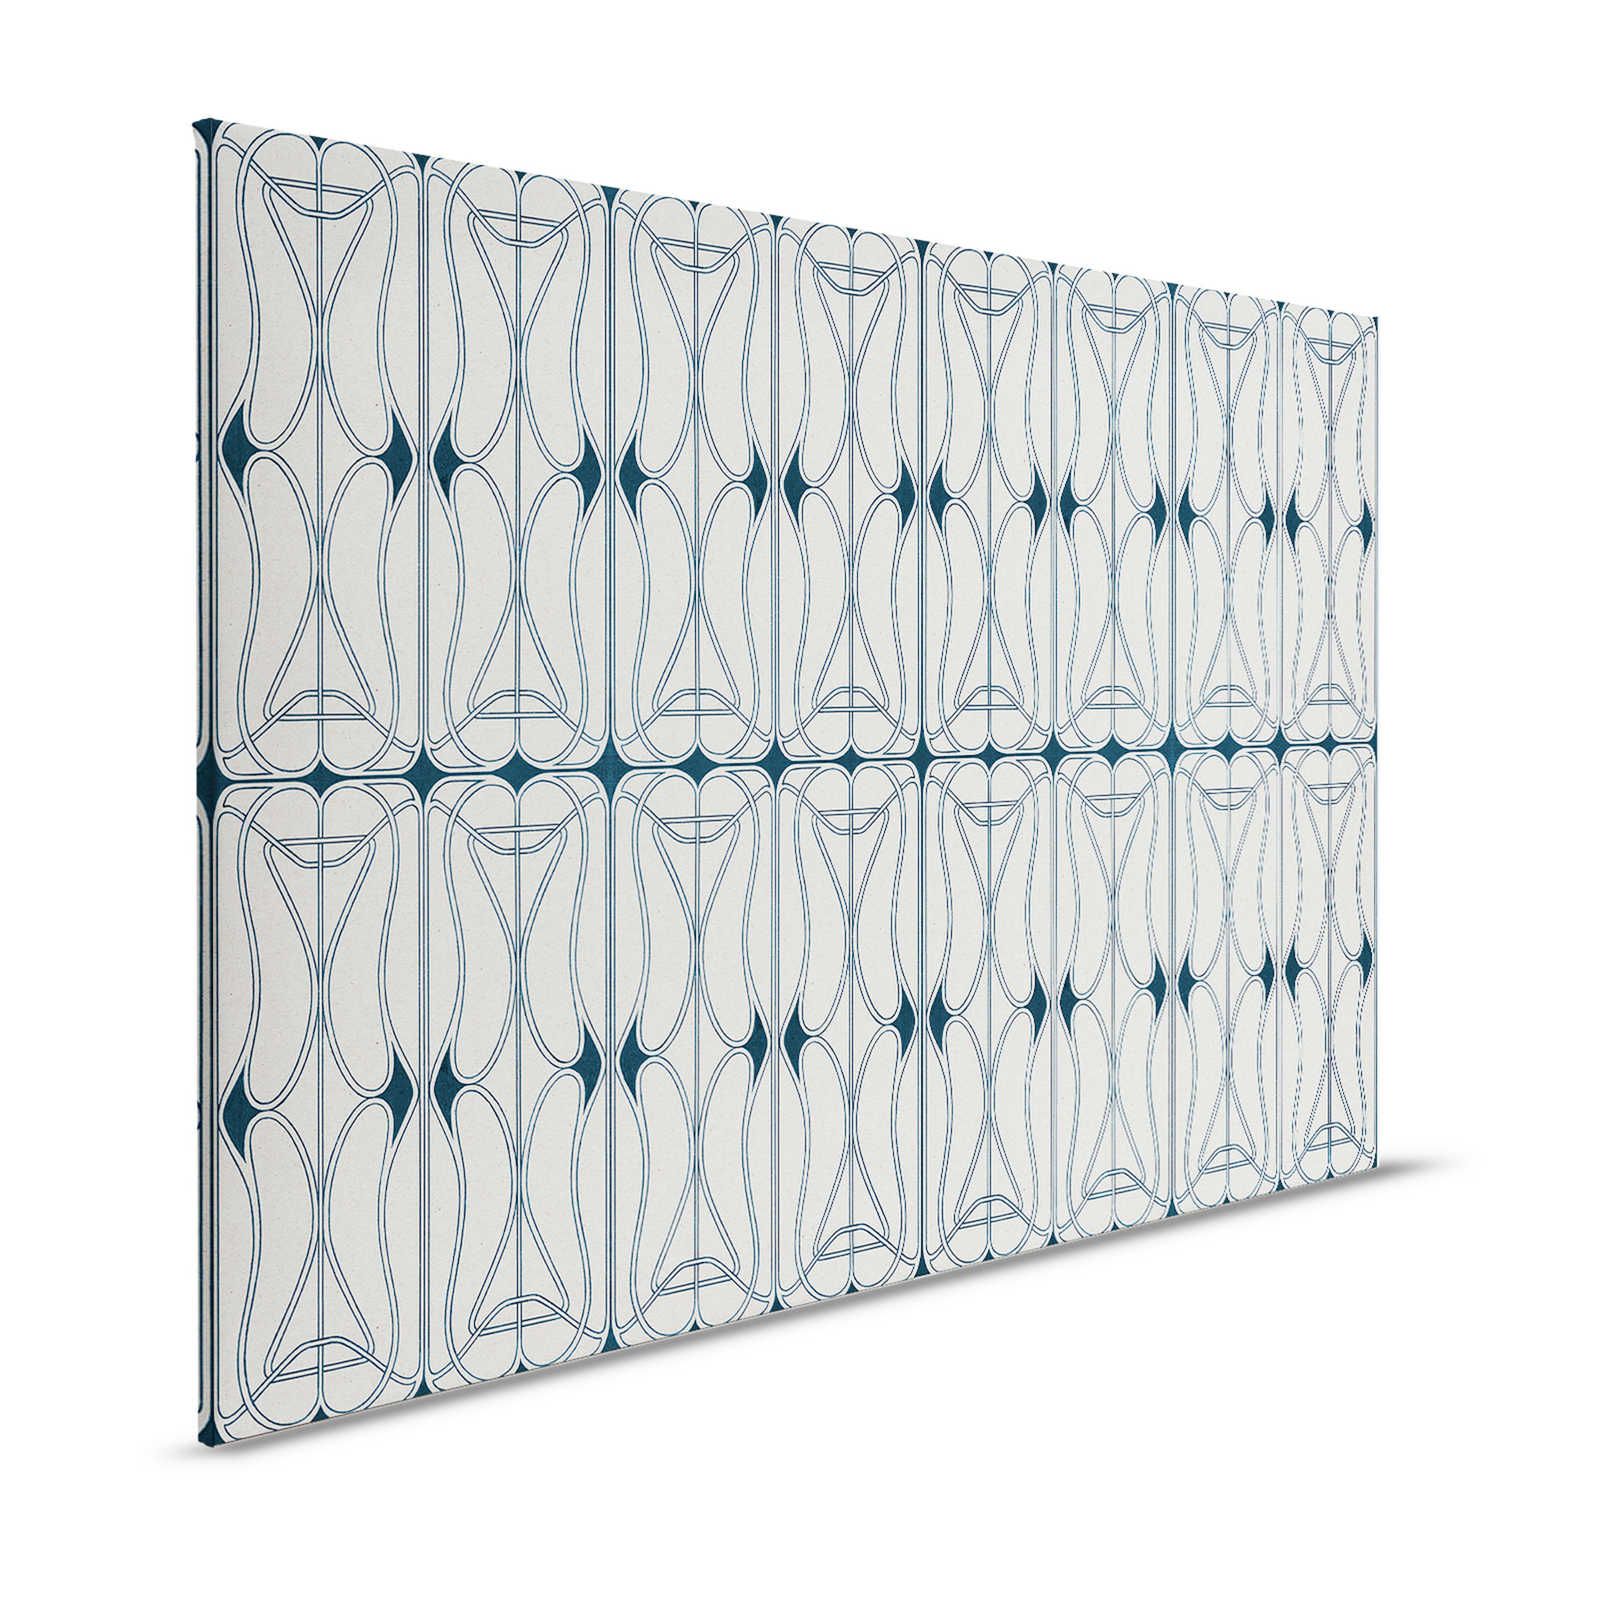         Astoria 1 - Leinwandbild Art Nouveau Muster Grau & Schwarzblau – 1,20 m x 0,80 m
    